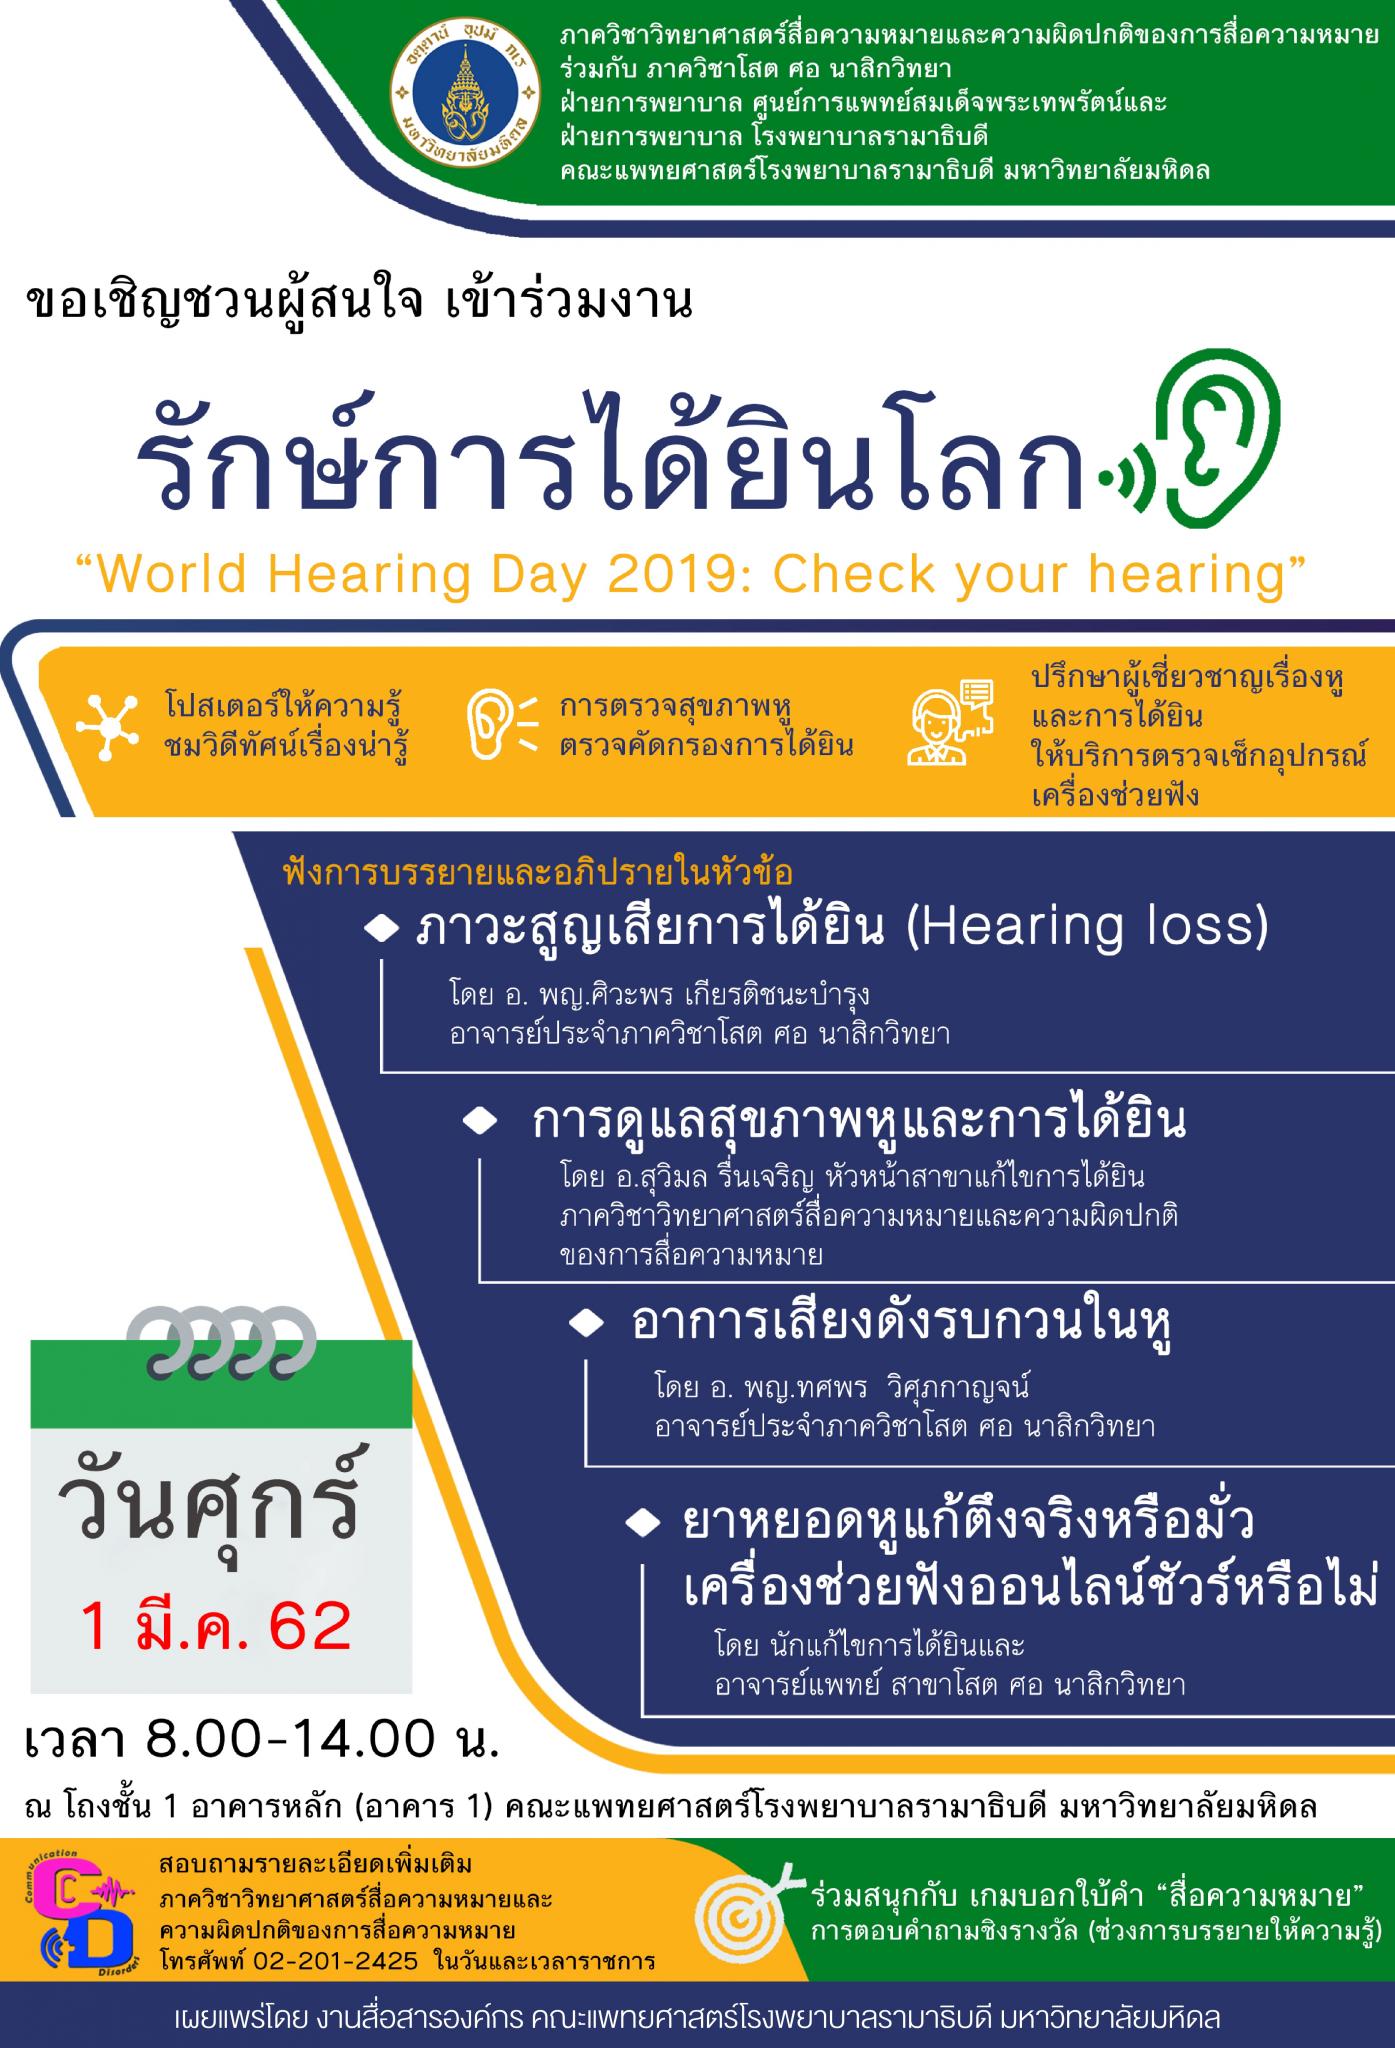 ขอเชิญชวนผู้สนใจ เข้าร่วมงาน รักษ์การได้ยินโลก “World Hearing Day 2019: Check your hearing”